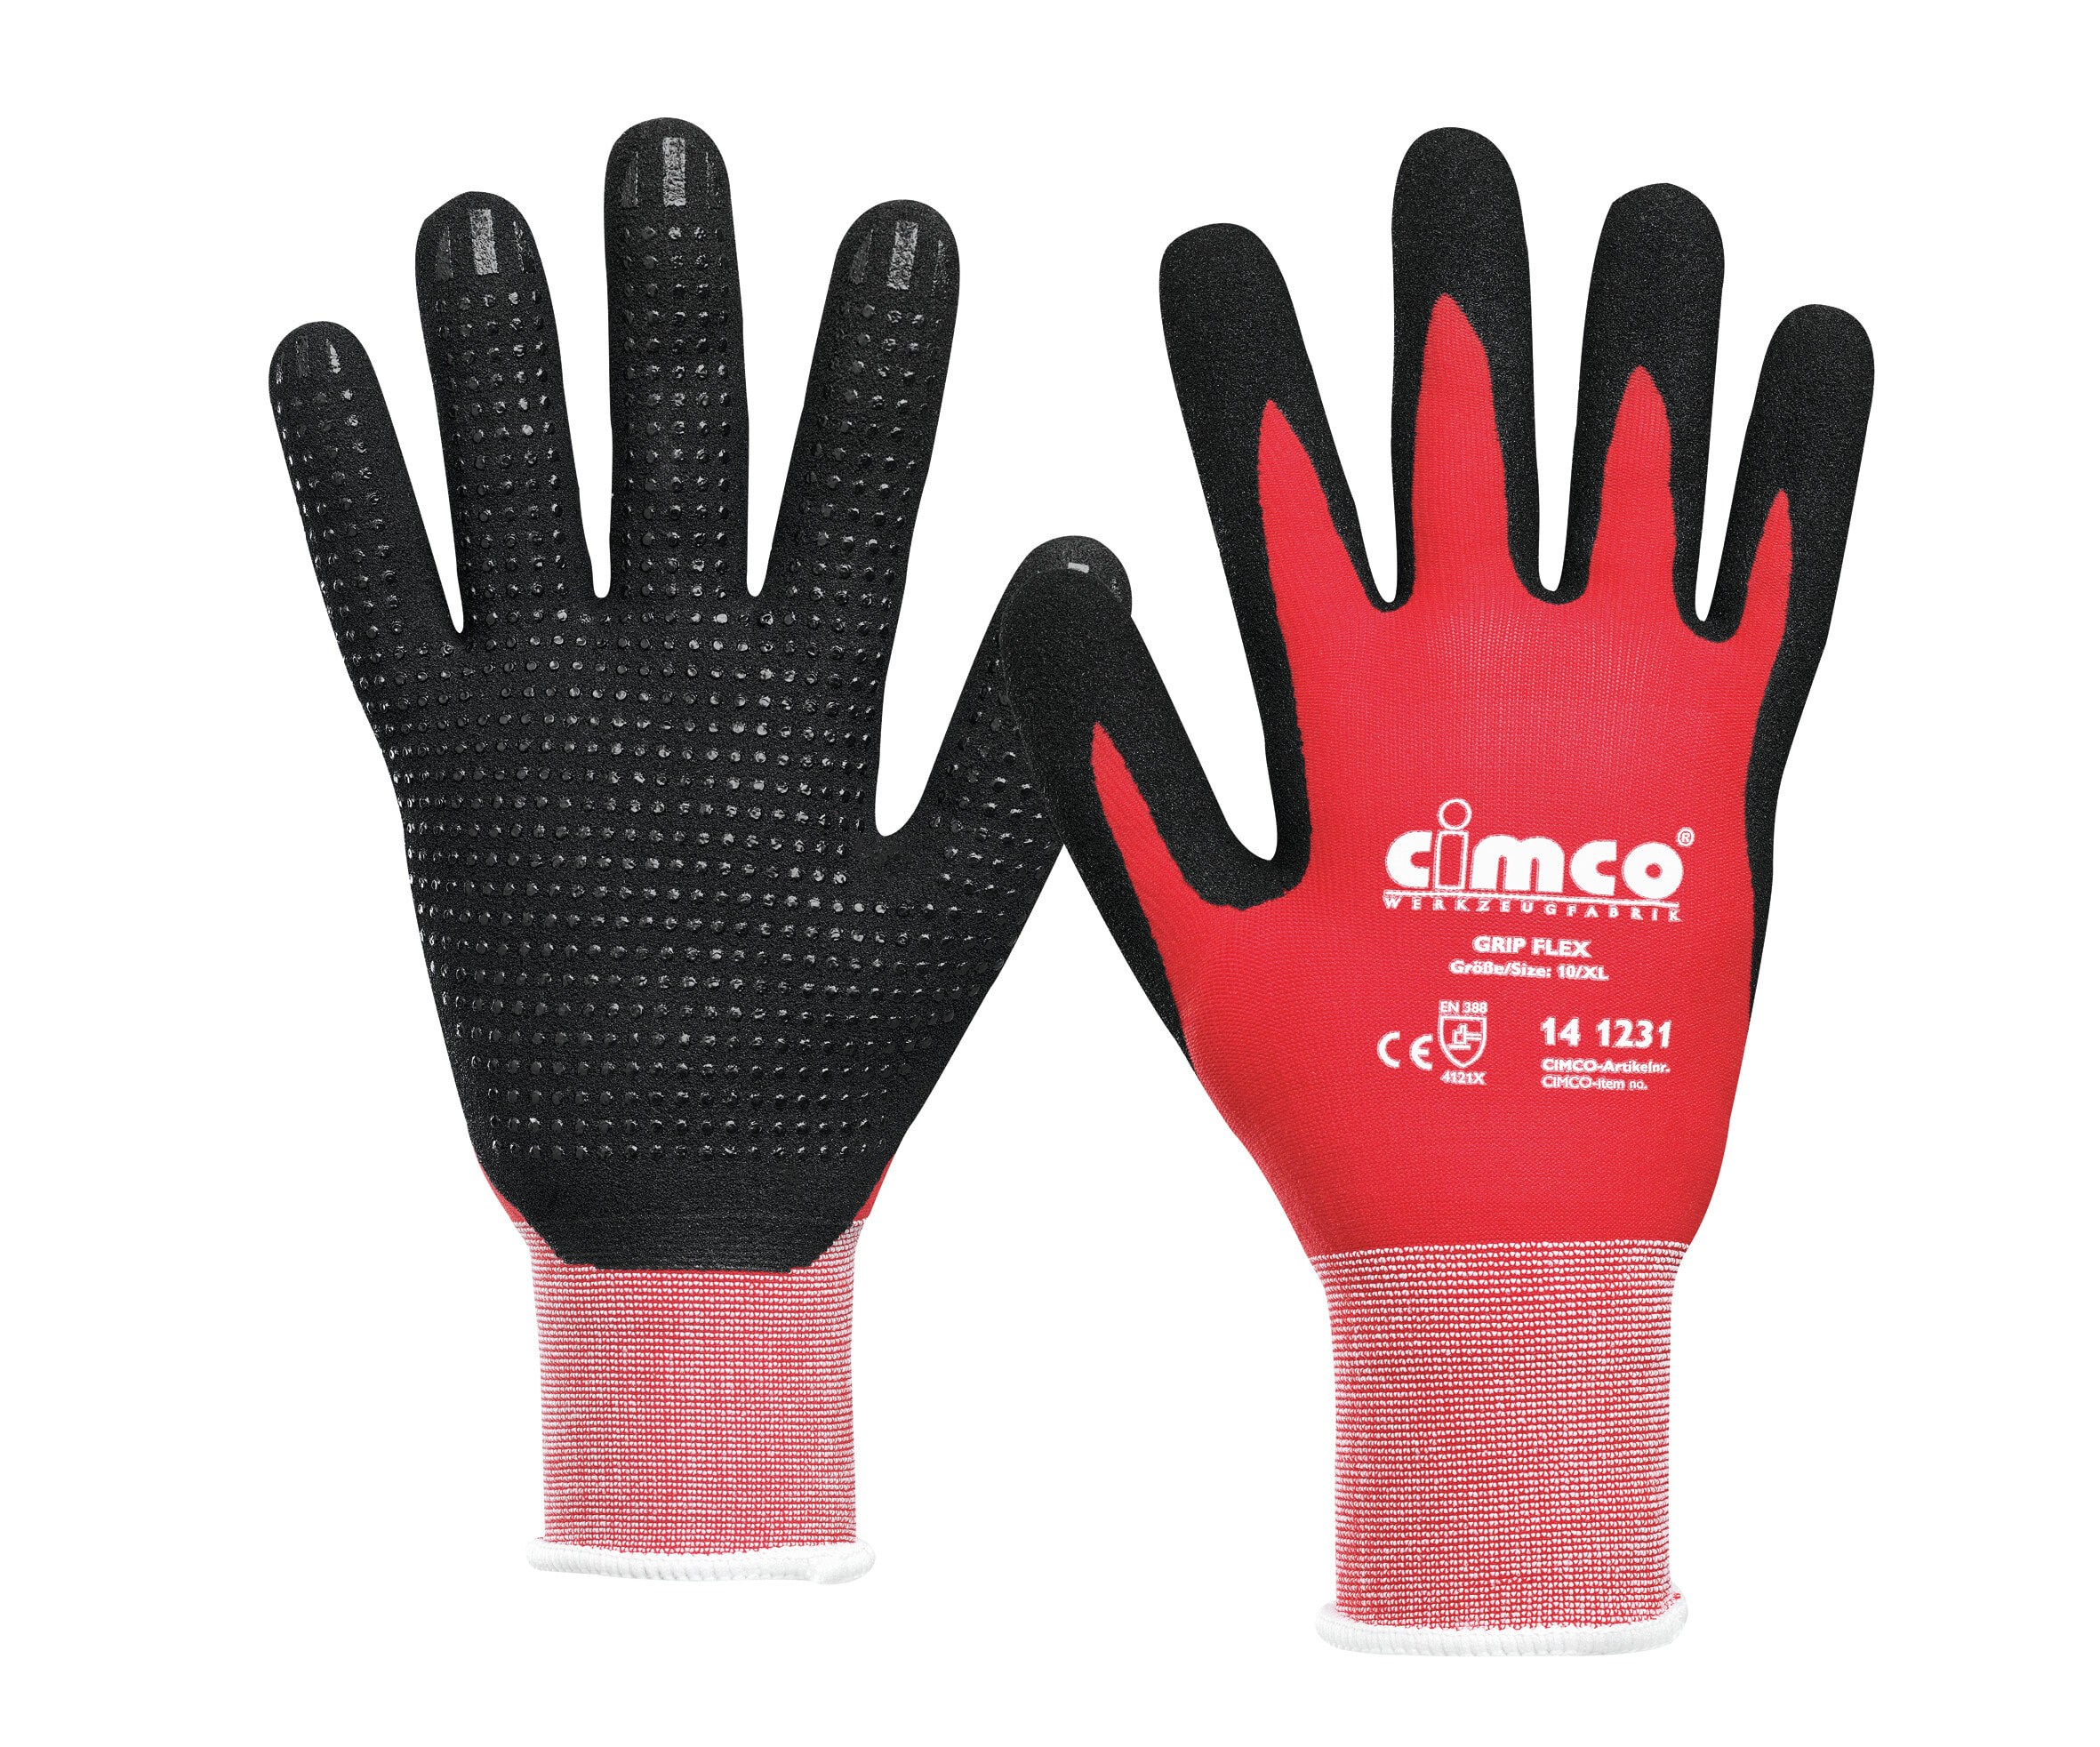 141233 - Workshop gloves - Black - Red - XXL - EUE - Adult - Unisex